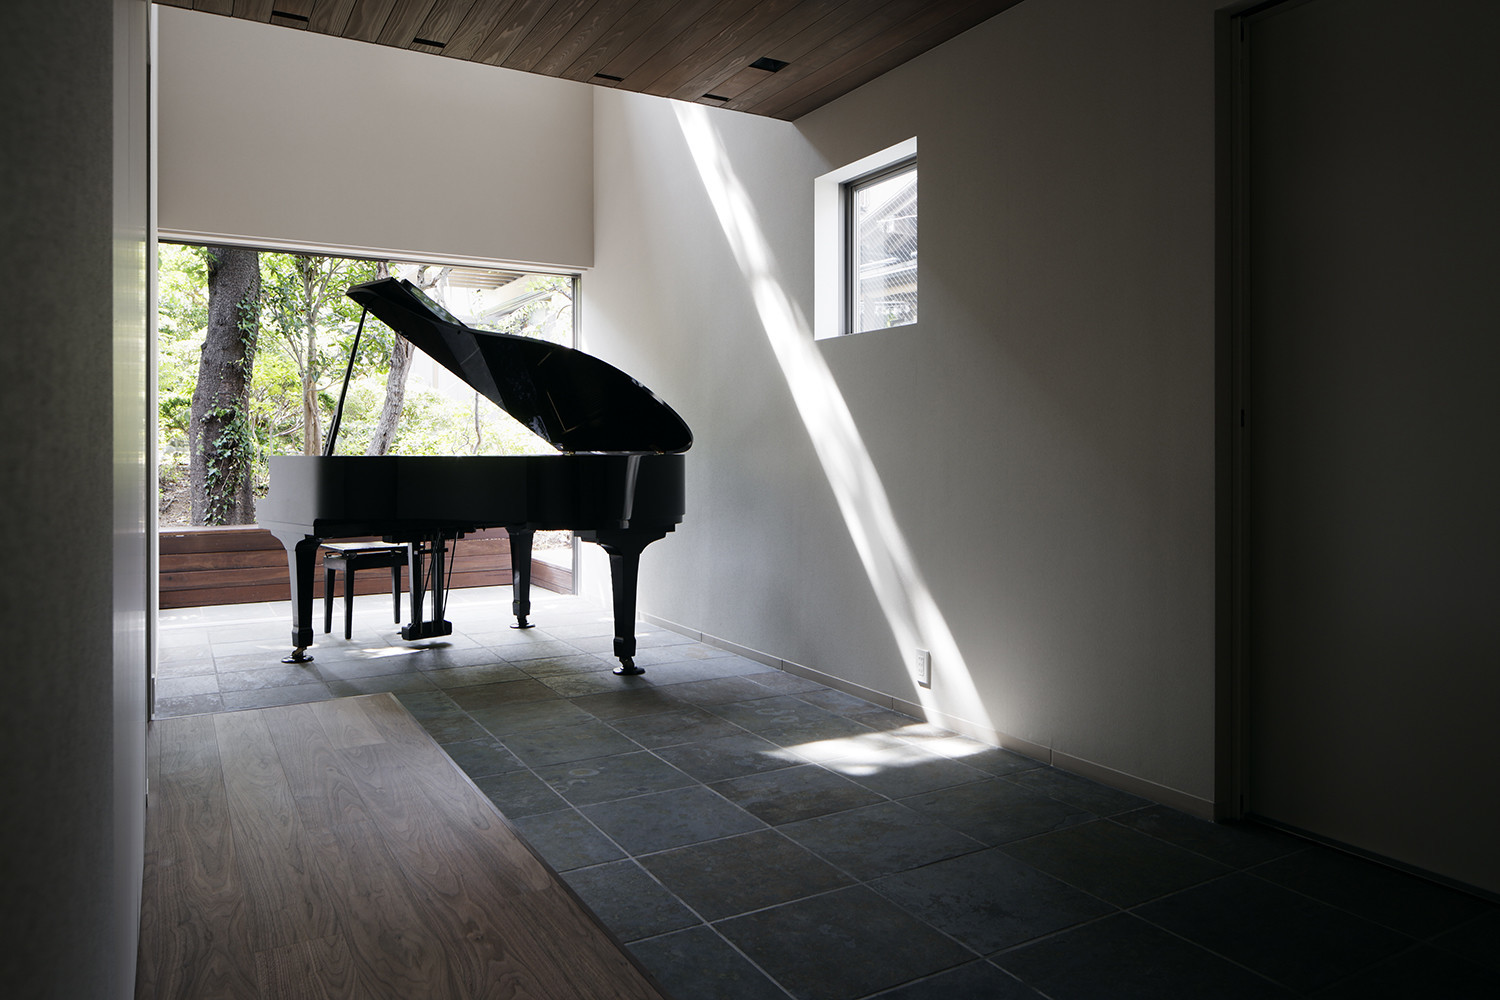 当初はピアノ室が求められていたが、より音楽を楽しめるよう玄関ホールの吹き抜け部分にピアノを置くことを提案した。 | 音が紡ぐ家